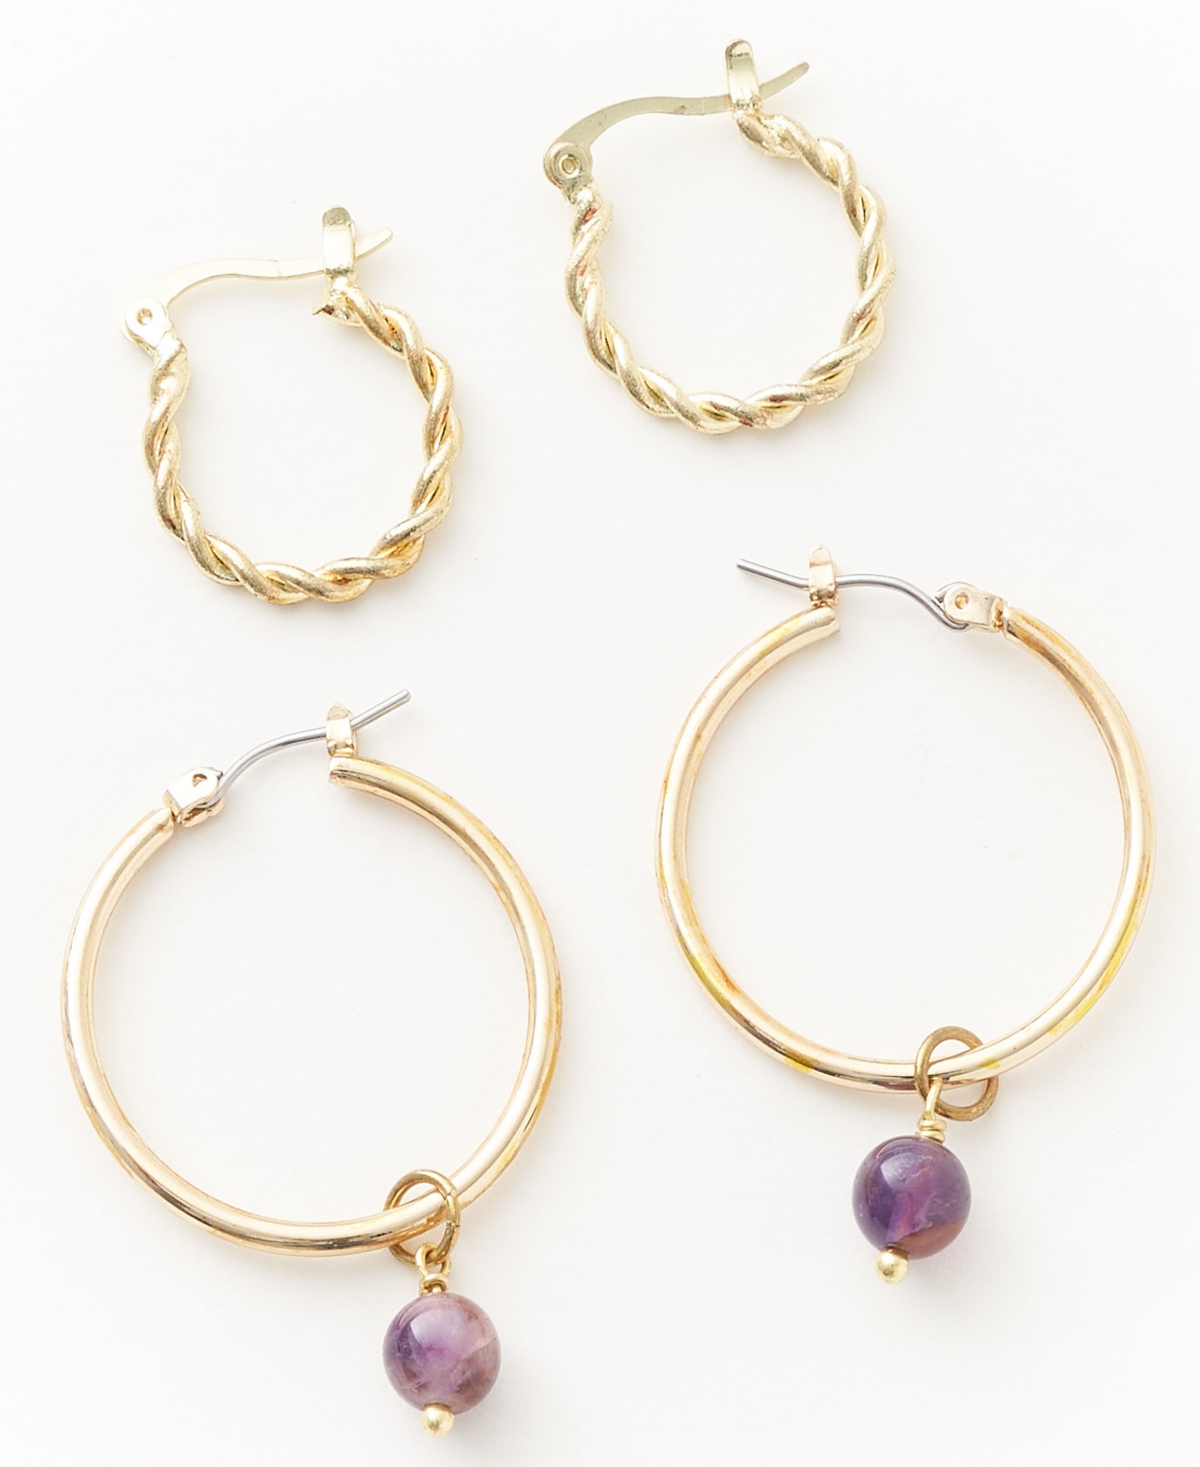 Matr Boomie Gold-tone Hoops Earrings Set In Purple